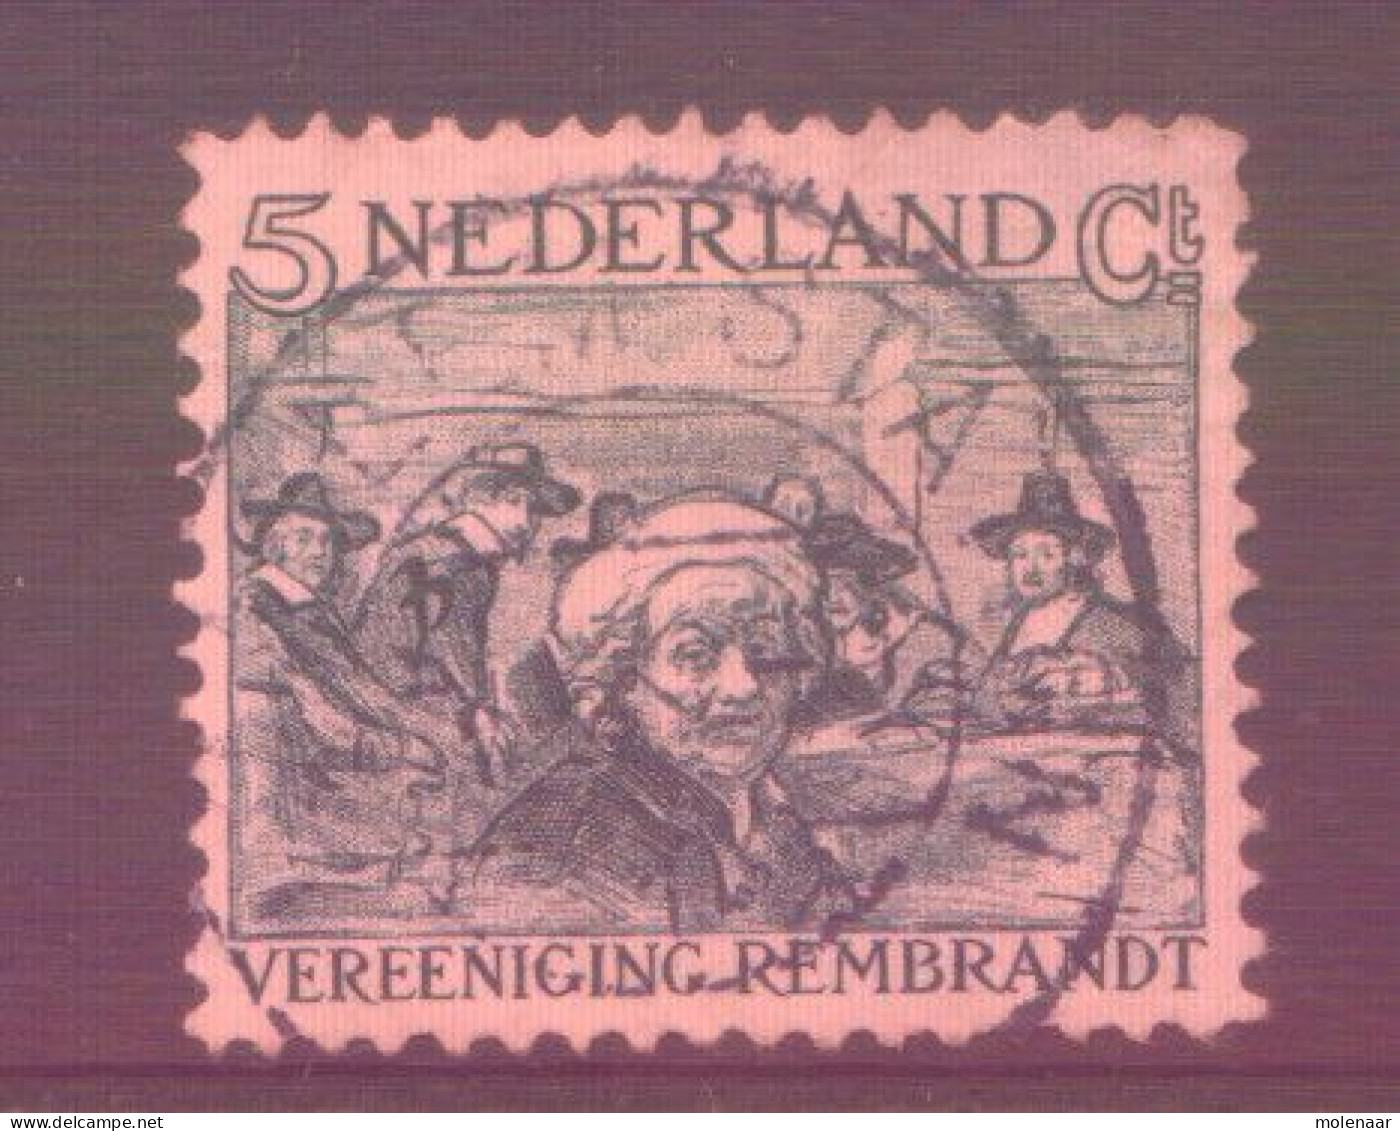 Postzegels > Europa > Nederland > Periode 1891-1948 (Wilhelmina) > 1891-1909 > 229 Gebruikt (11761) - Used Stamps